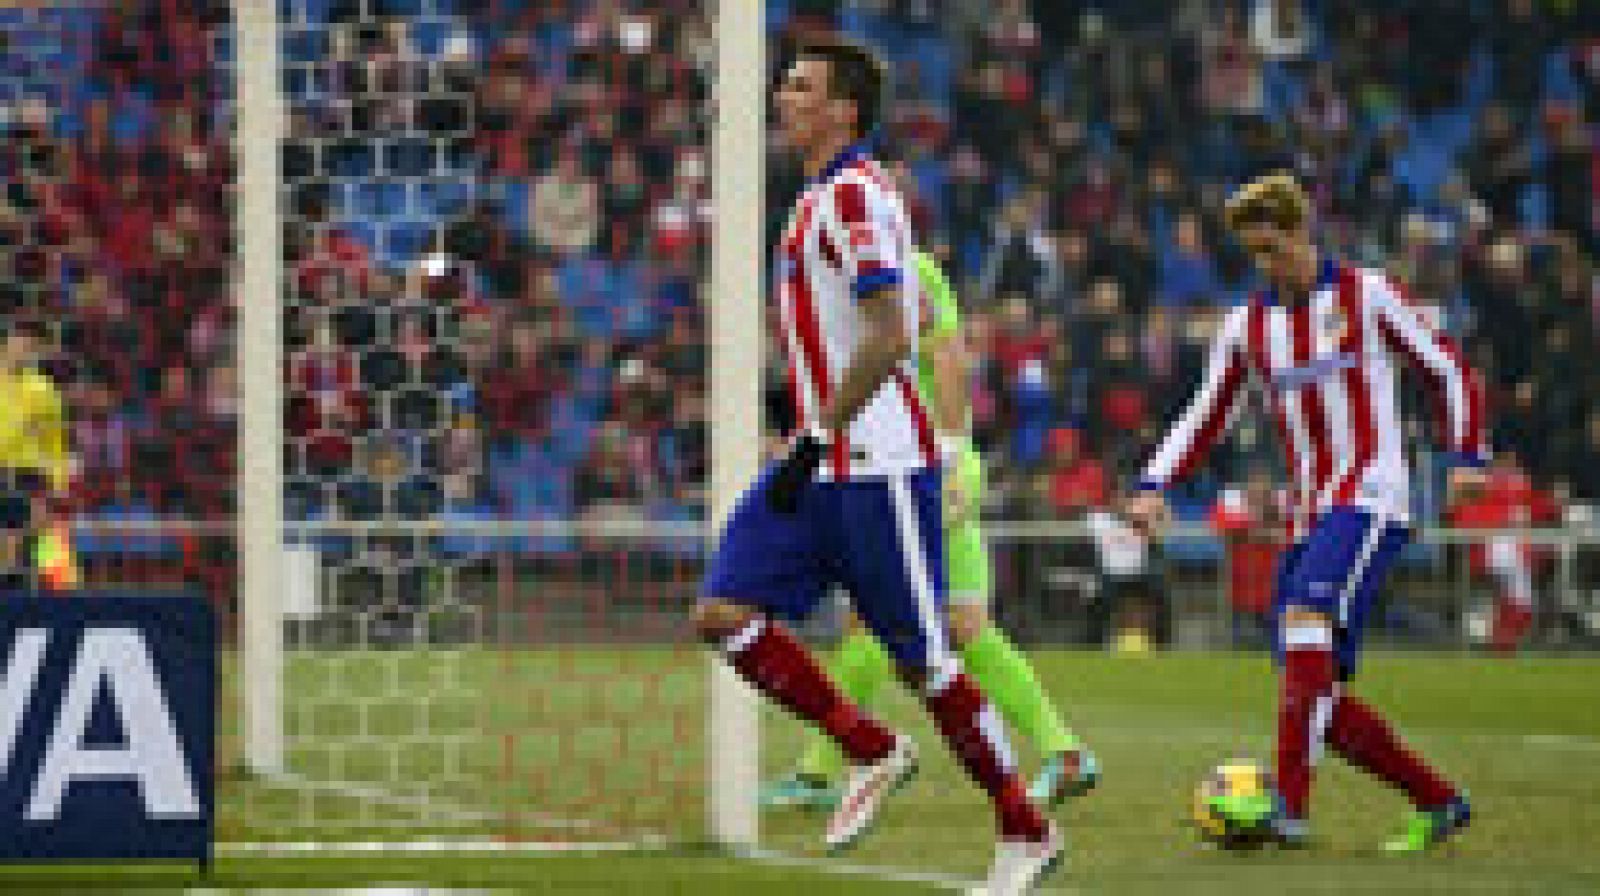 El Atlético de Madrid cierra la primera vuelta de la Liga consolidado en la tercera plaza de la clasificación tras la victoria ante el Granada (2-0). Un gol de Mario Mandzukic desde el punto de penalti y un cabezazo de Raúl García han sido suficientes para sumar los tres puntos y dejar atrás la derrota de la pasada jornada en el Camp Nou.